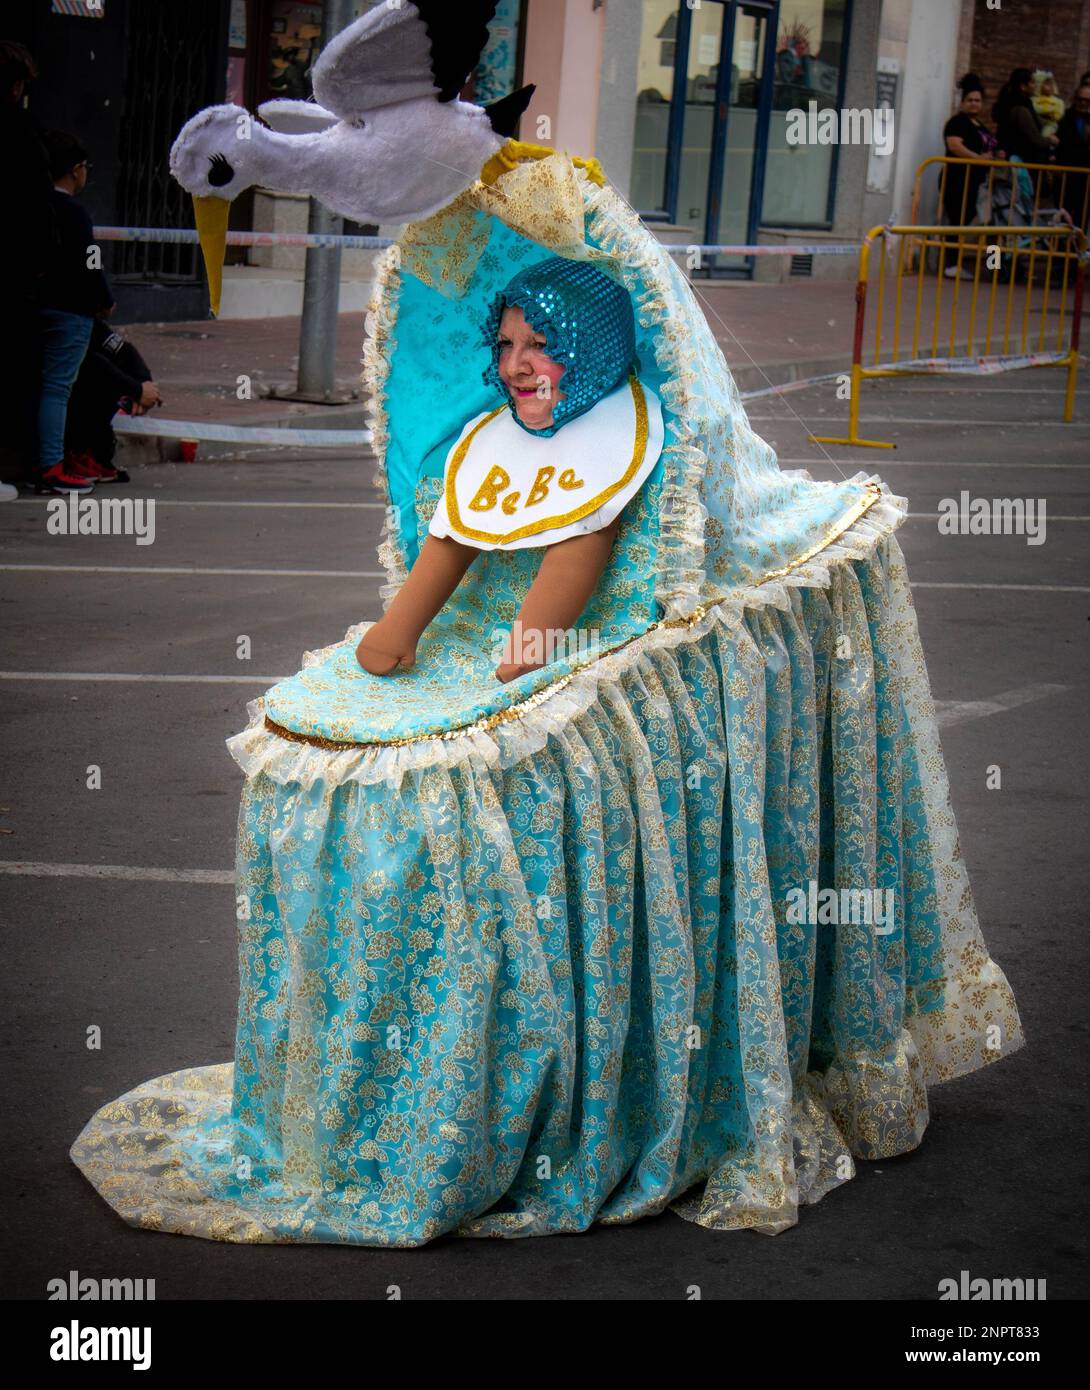 Gente feliz desfilando y bailando, con disfraces abstractos y coloridos en el desfile de Carnaval de Navalmoral de la Mata, España Banque D'Images